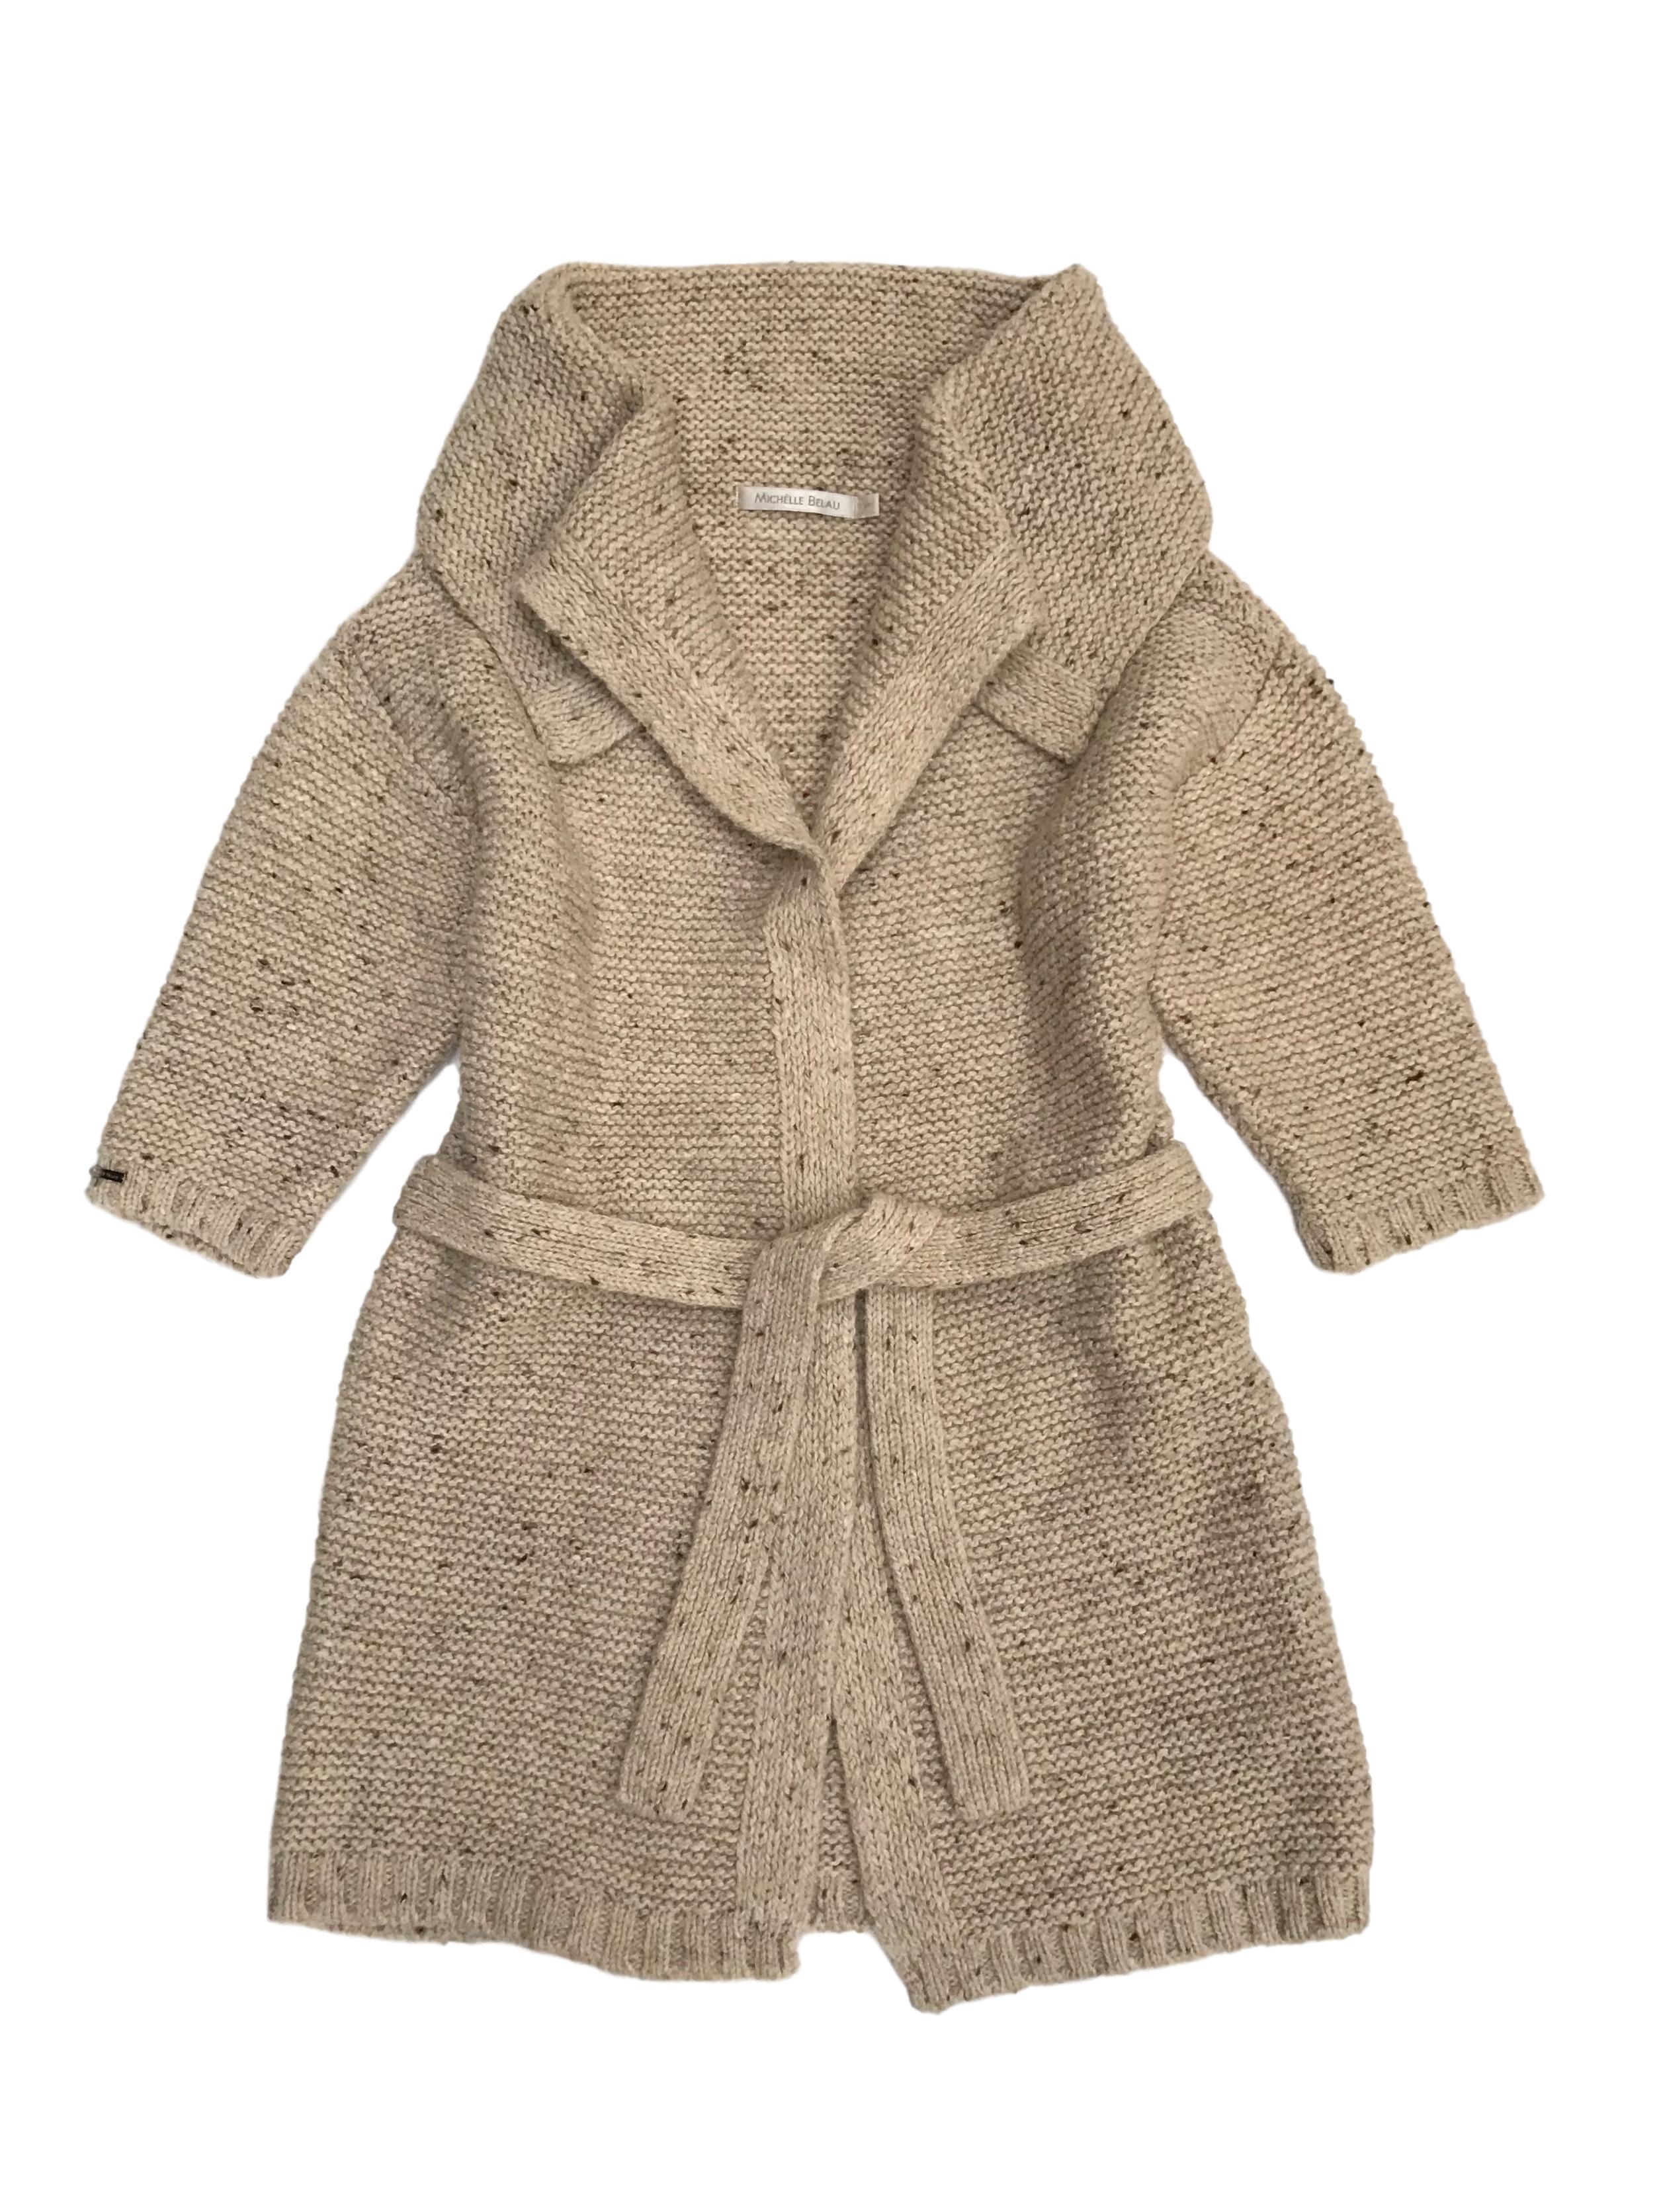 Cardigan grueso Michelle Belau 35% lana 25% alpaca 40% acrílico, con cinto para amarrar. Largo 75cm